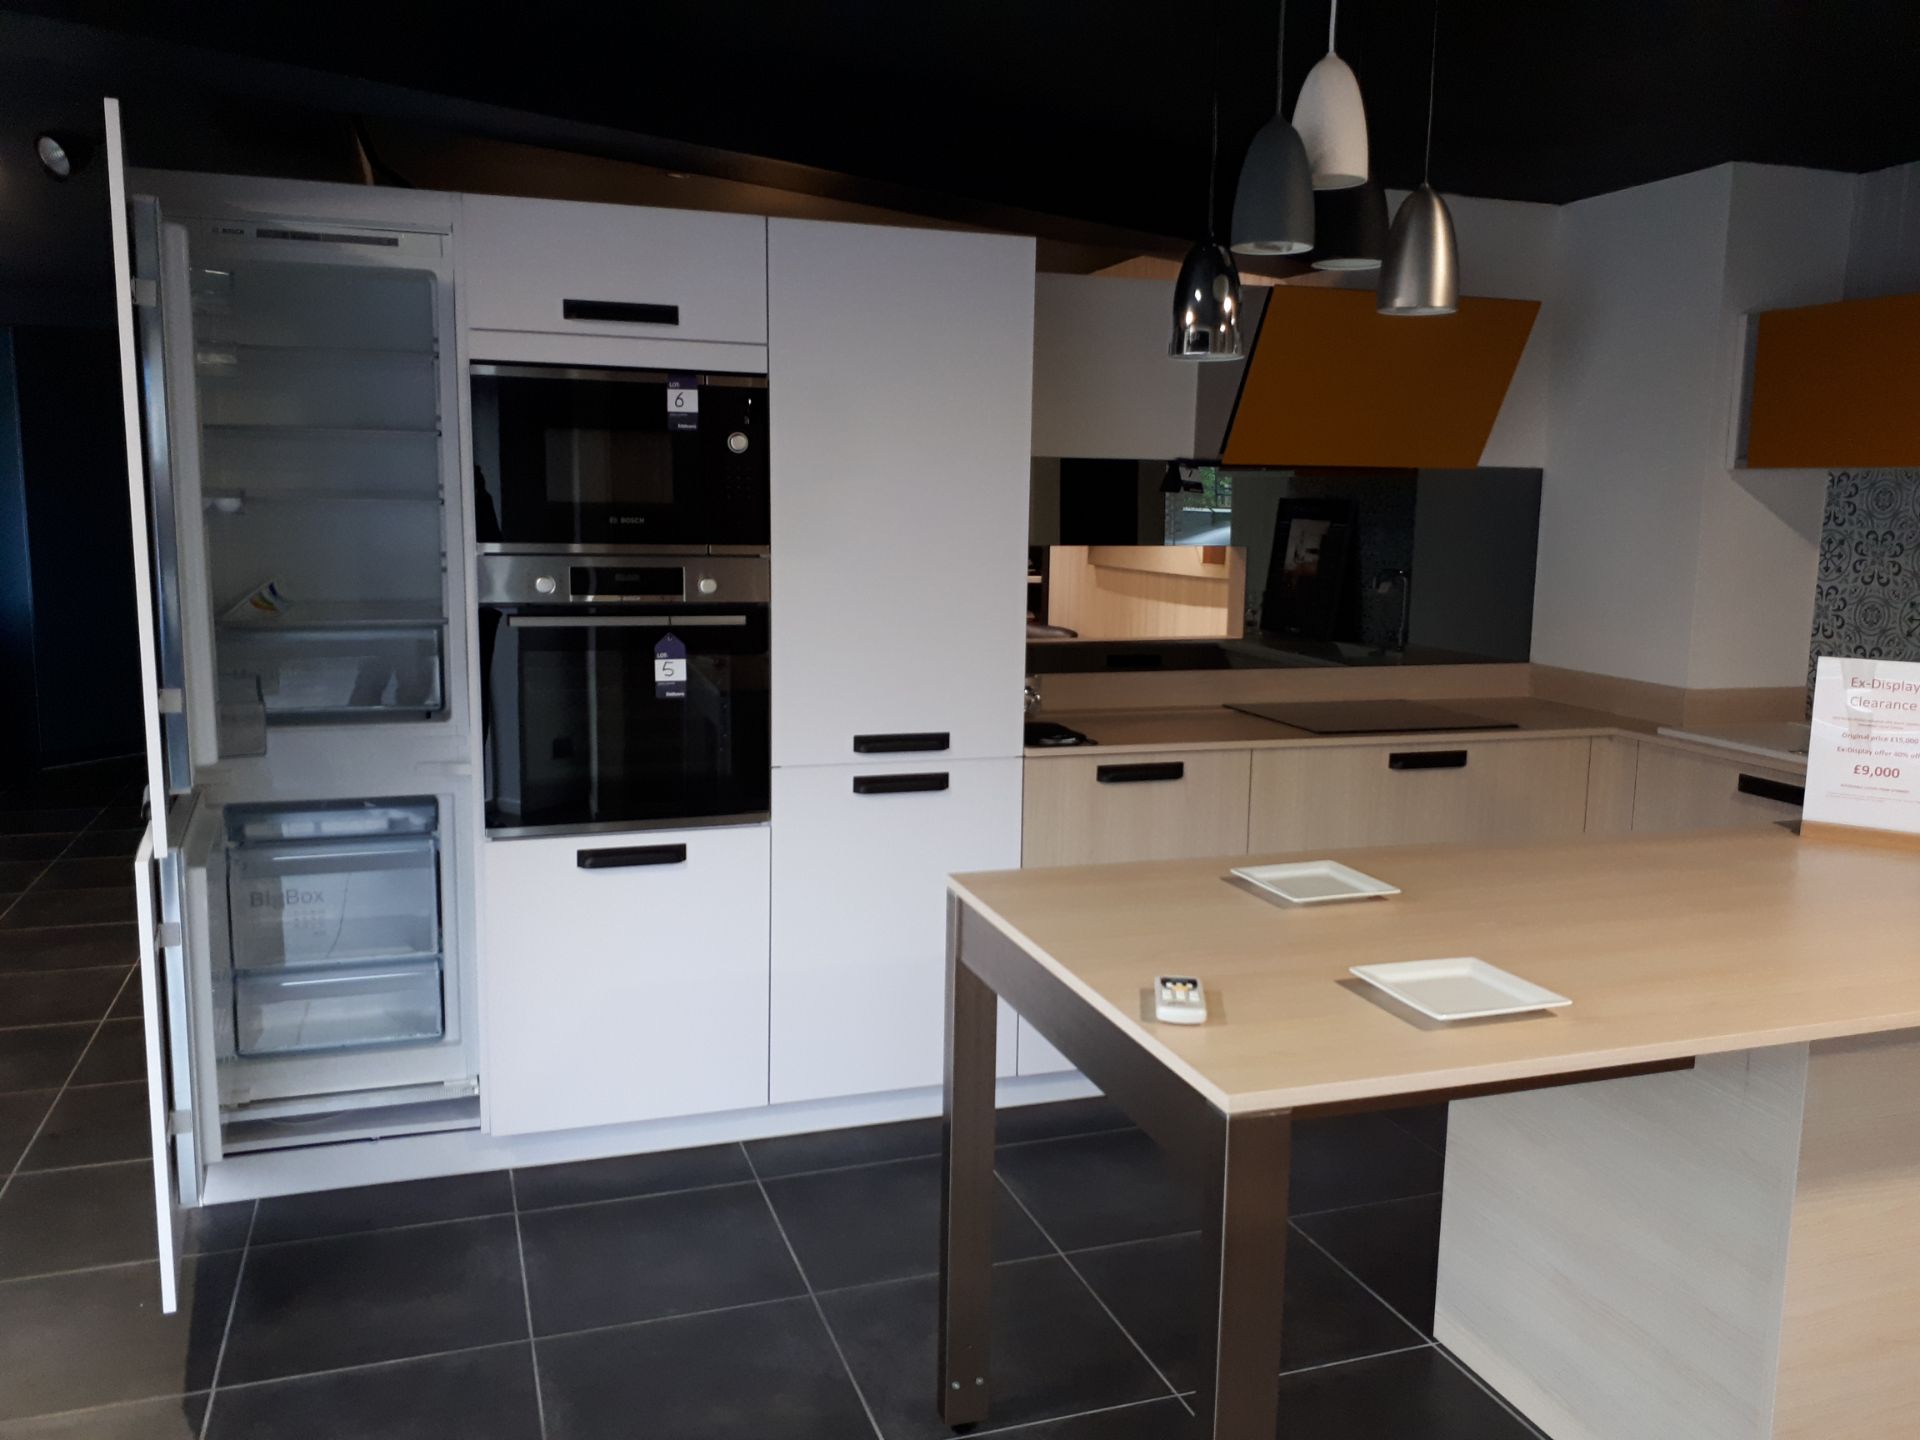 Schmidt Premium range display kitchen in Arcos Mix - Image 4 of 8